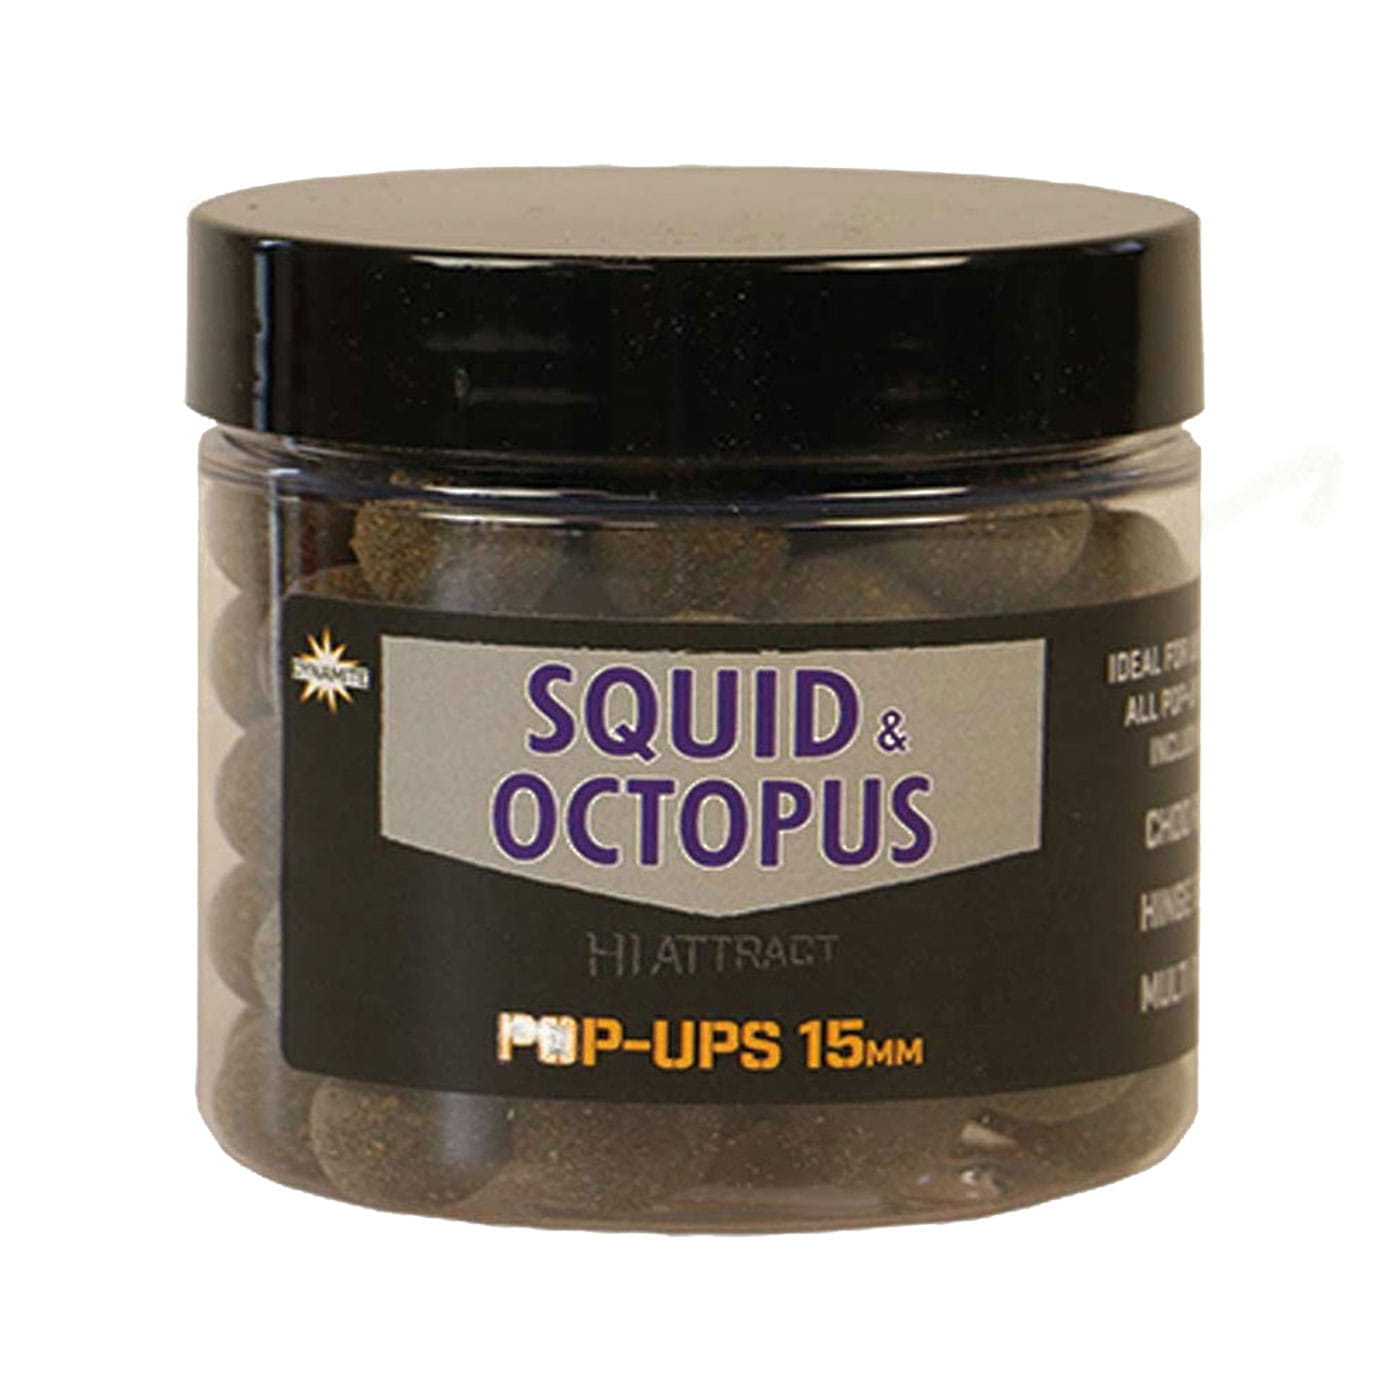 Hi Attract Squid & Octopus Pop-Ups